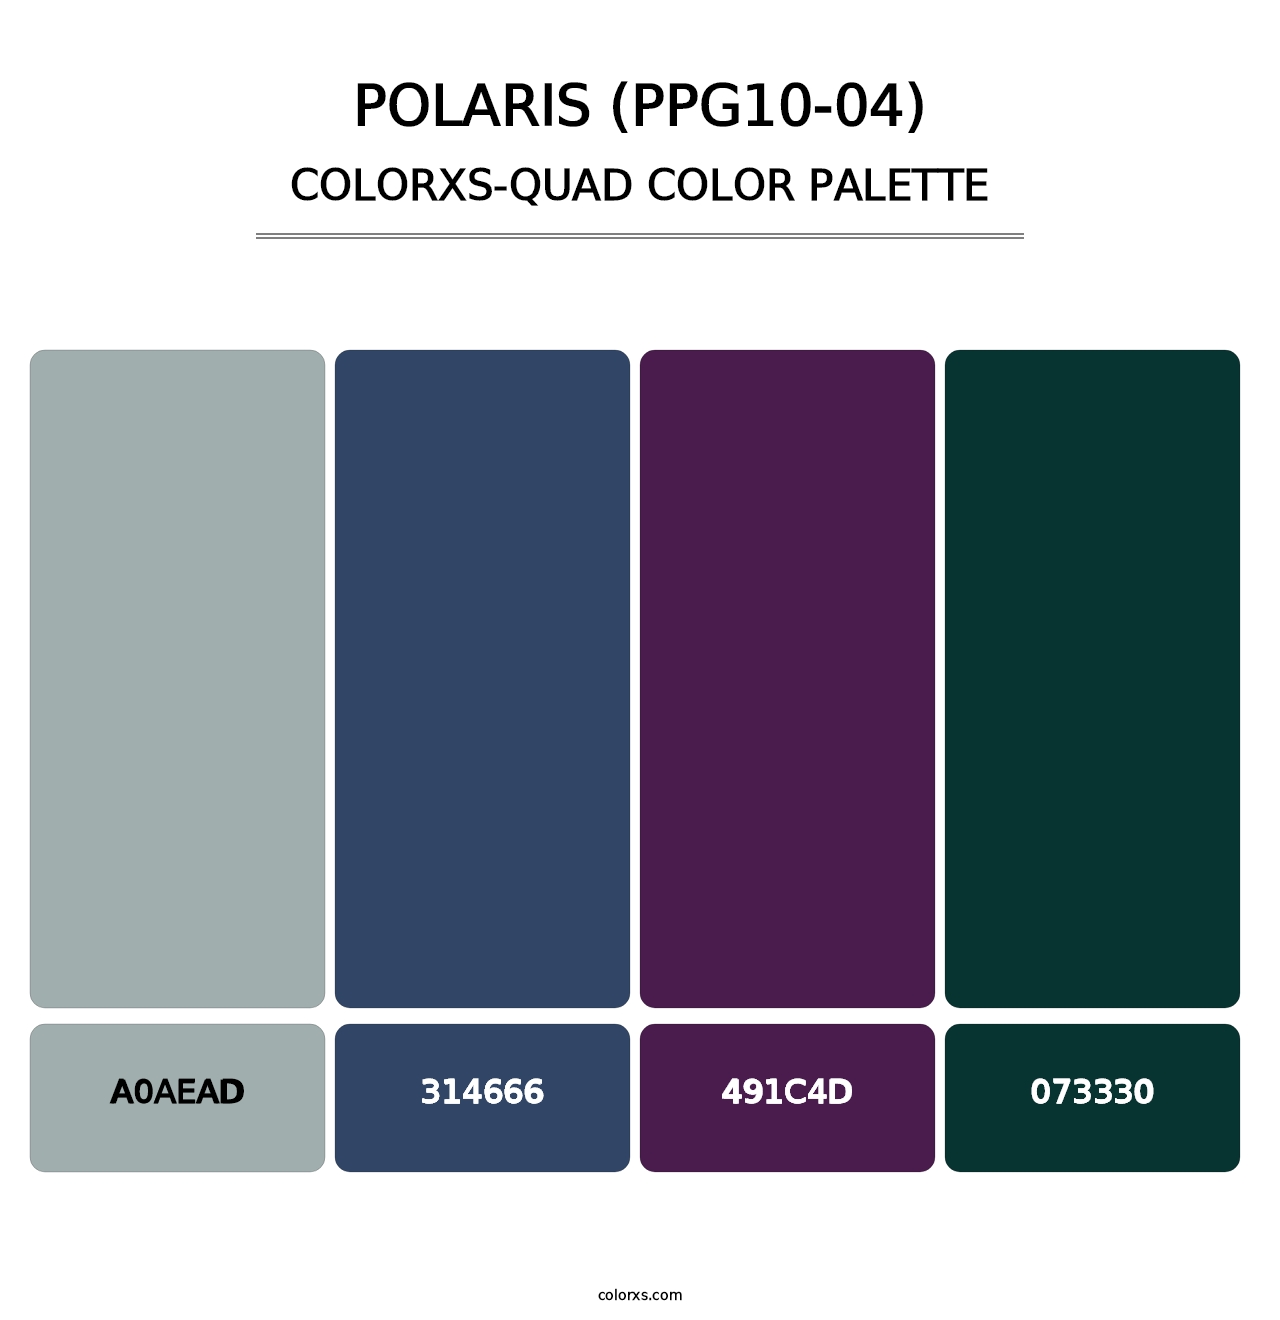 Polaris (PPG10-04) - Colorxs Quad Palette